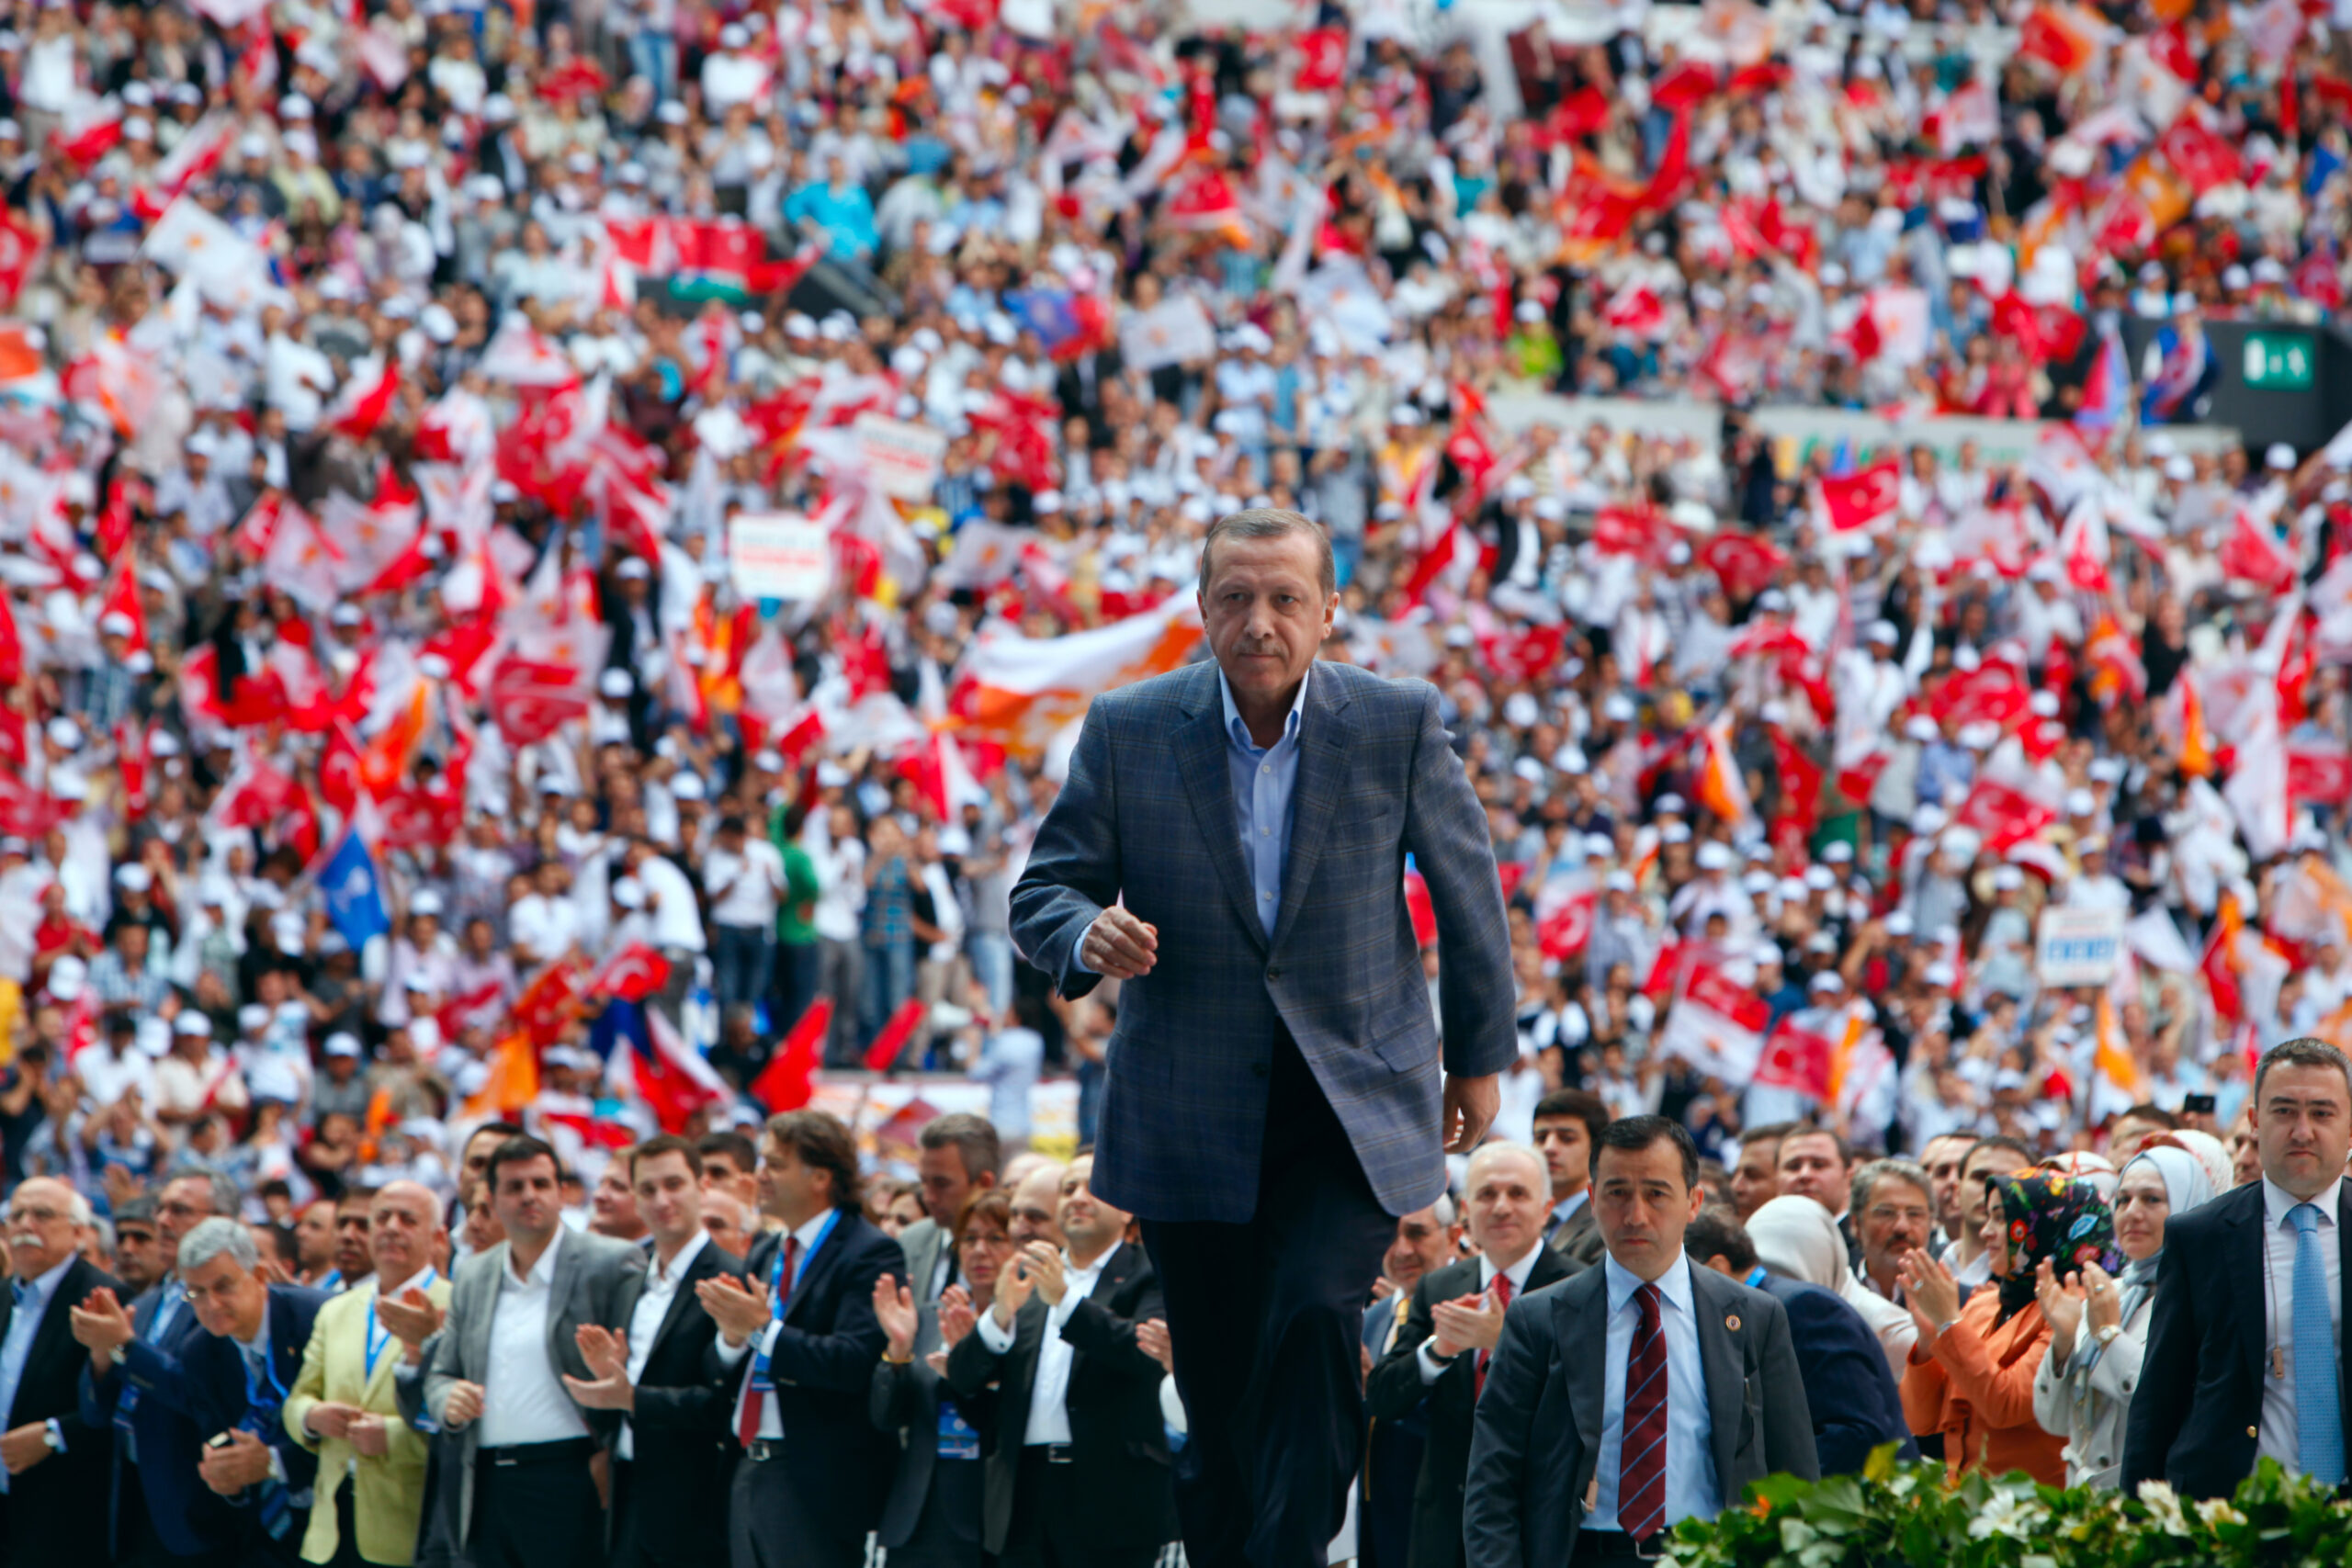 Istanbul, Turcia - 27 mai 2012: Cel de-al patrulea congres ordinar al partidului de guvernământ AK a avut loc la 27 mai 2012 la Istanbul, Turcia. Liderul partidului AK și prim-ministru Recep Tayyip Erdogan salută membrii partidului. (dreamstime)